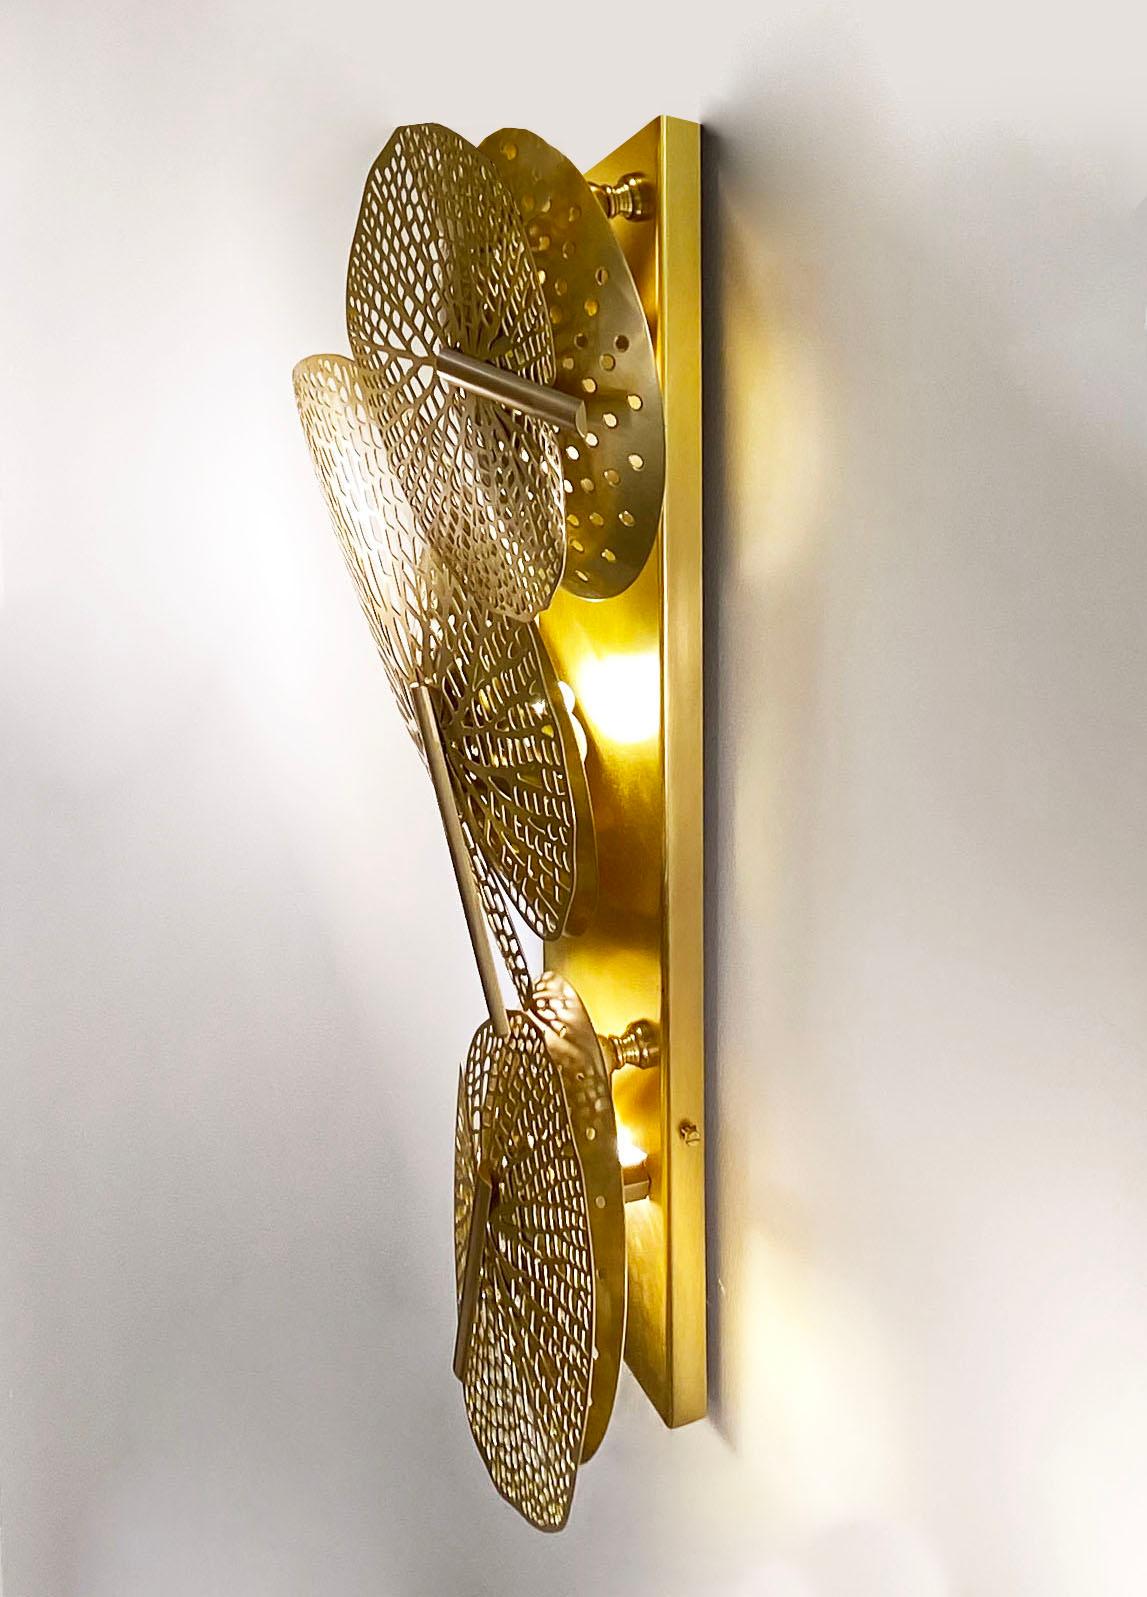 Die unterschiedlich großen Messingblätter dieser Art Deco Design Skulptur bringen die Natur in Ihr Interieur und sind ein einzigartiges Kunstwerk, das vollständig handgefertigt, graviert und lasergeschnitten ist. Hinter durchbrochenen konkaven